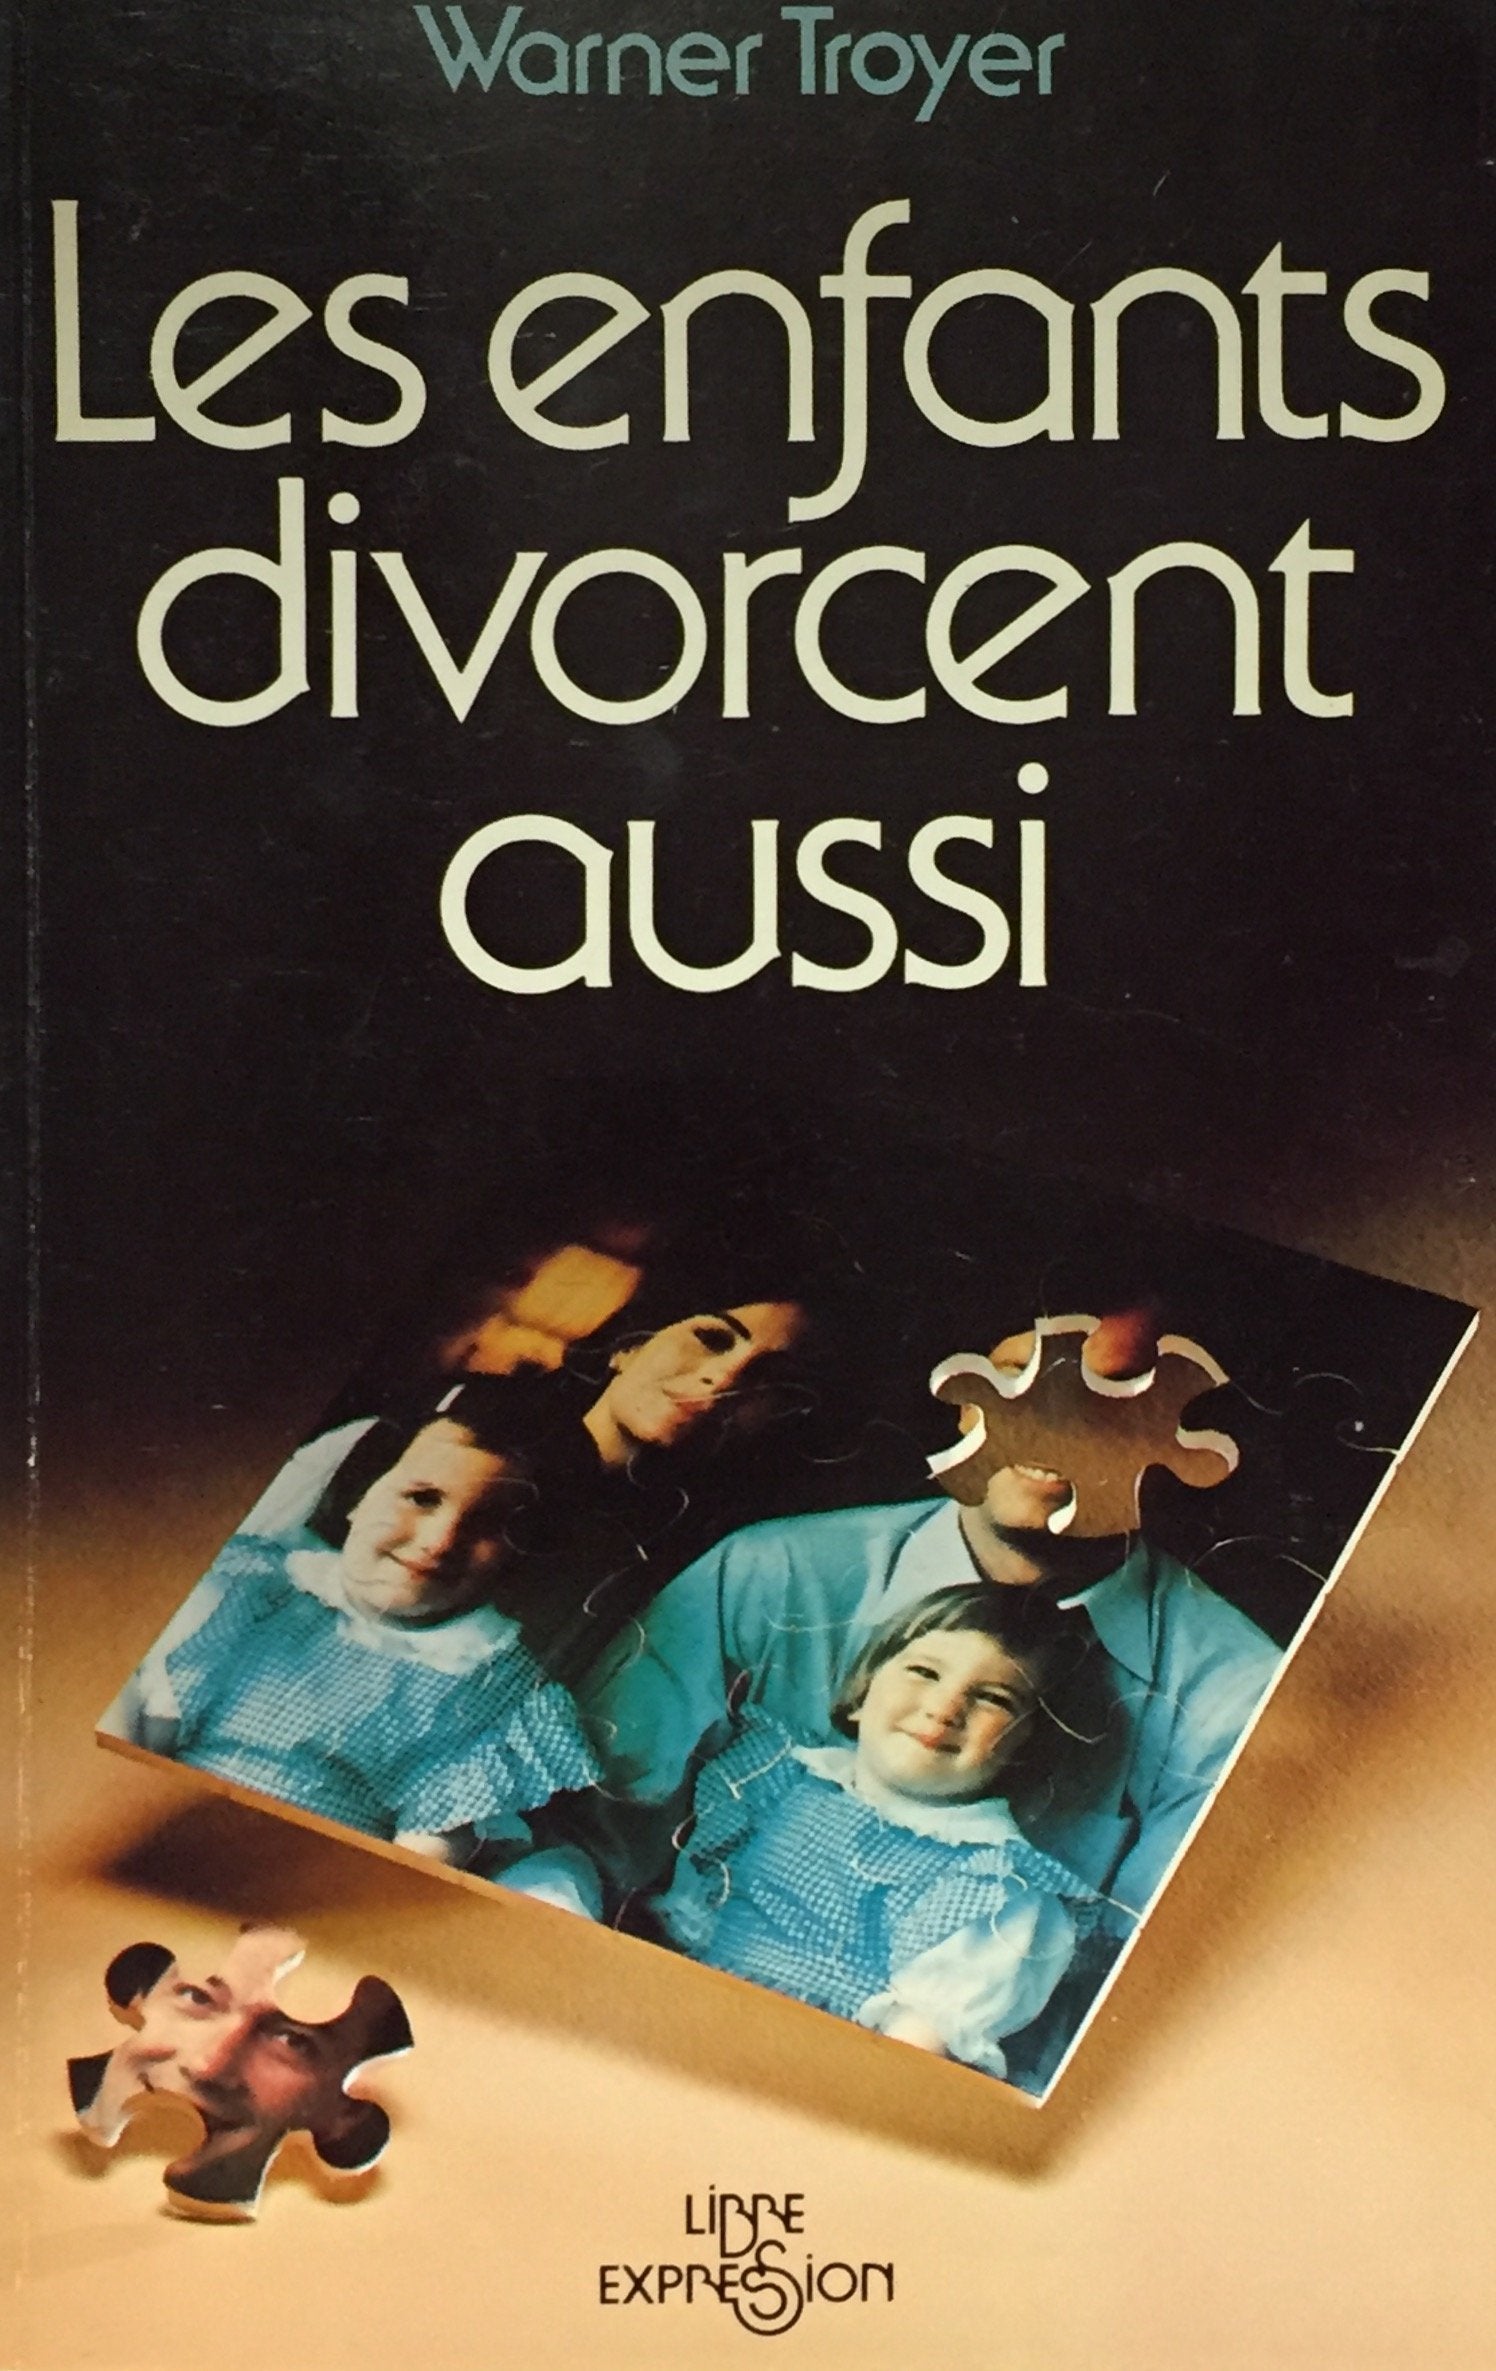 Livre ISBN 2891110870 Les enfants divorcent aussi